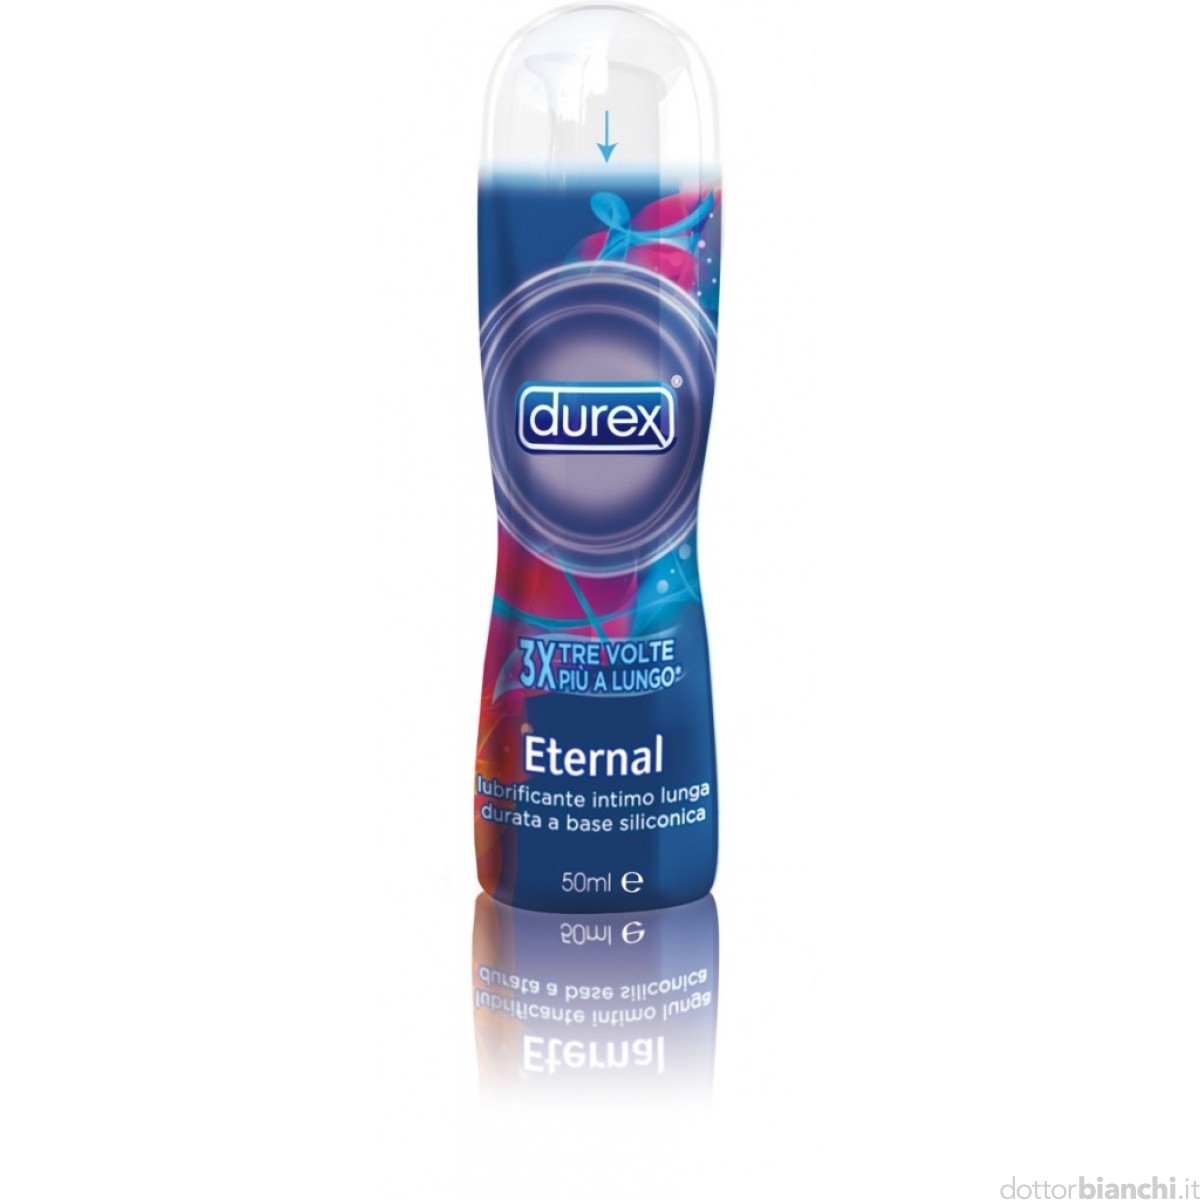 DUREX lubrificante intimo eternal gel